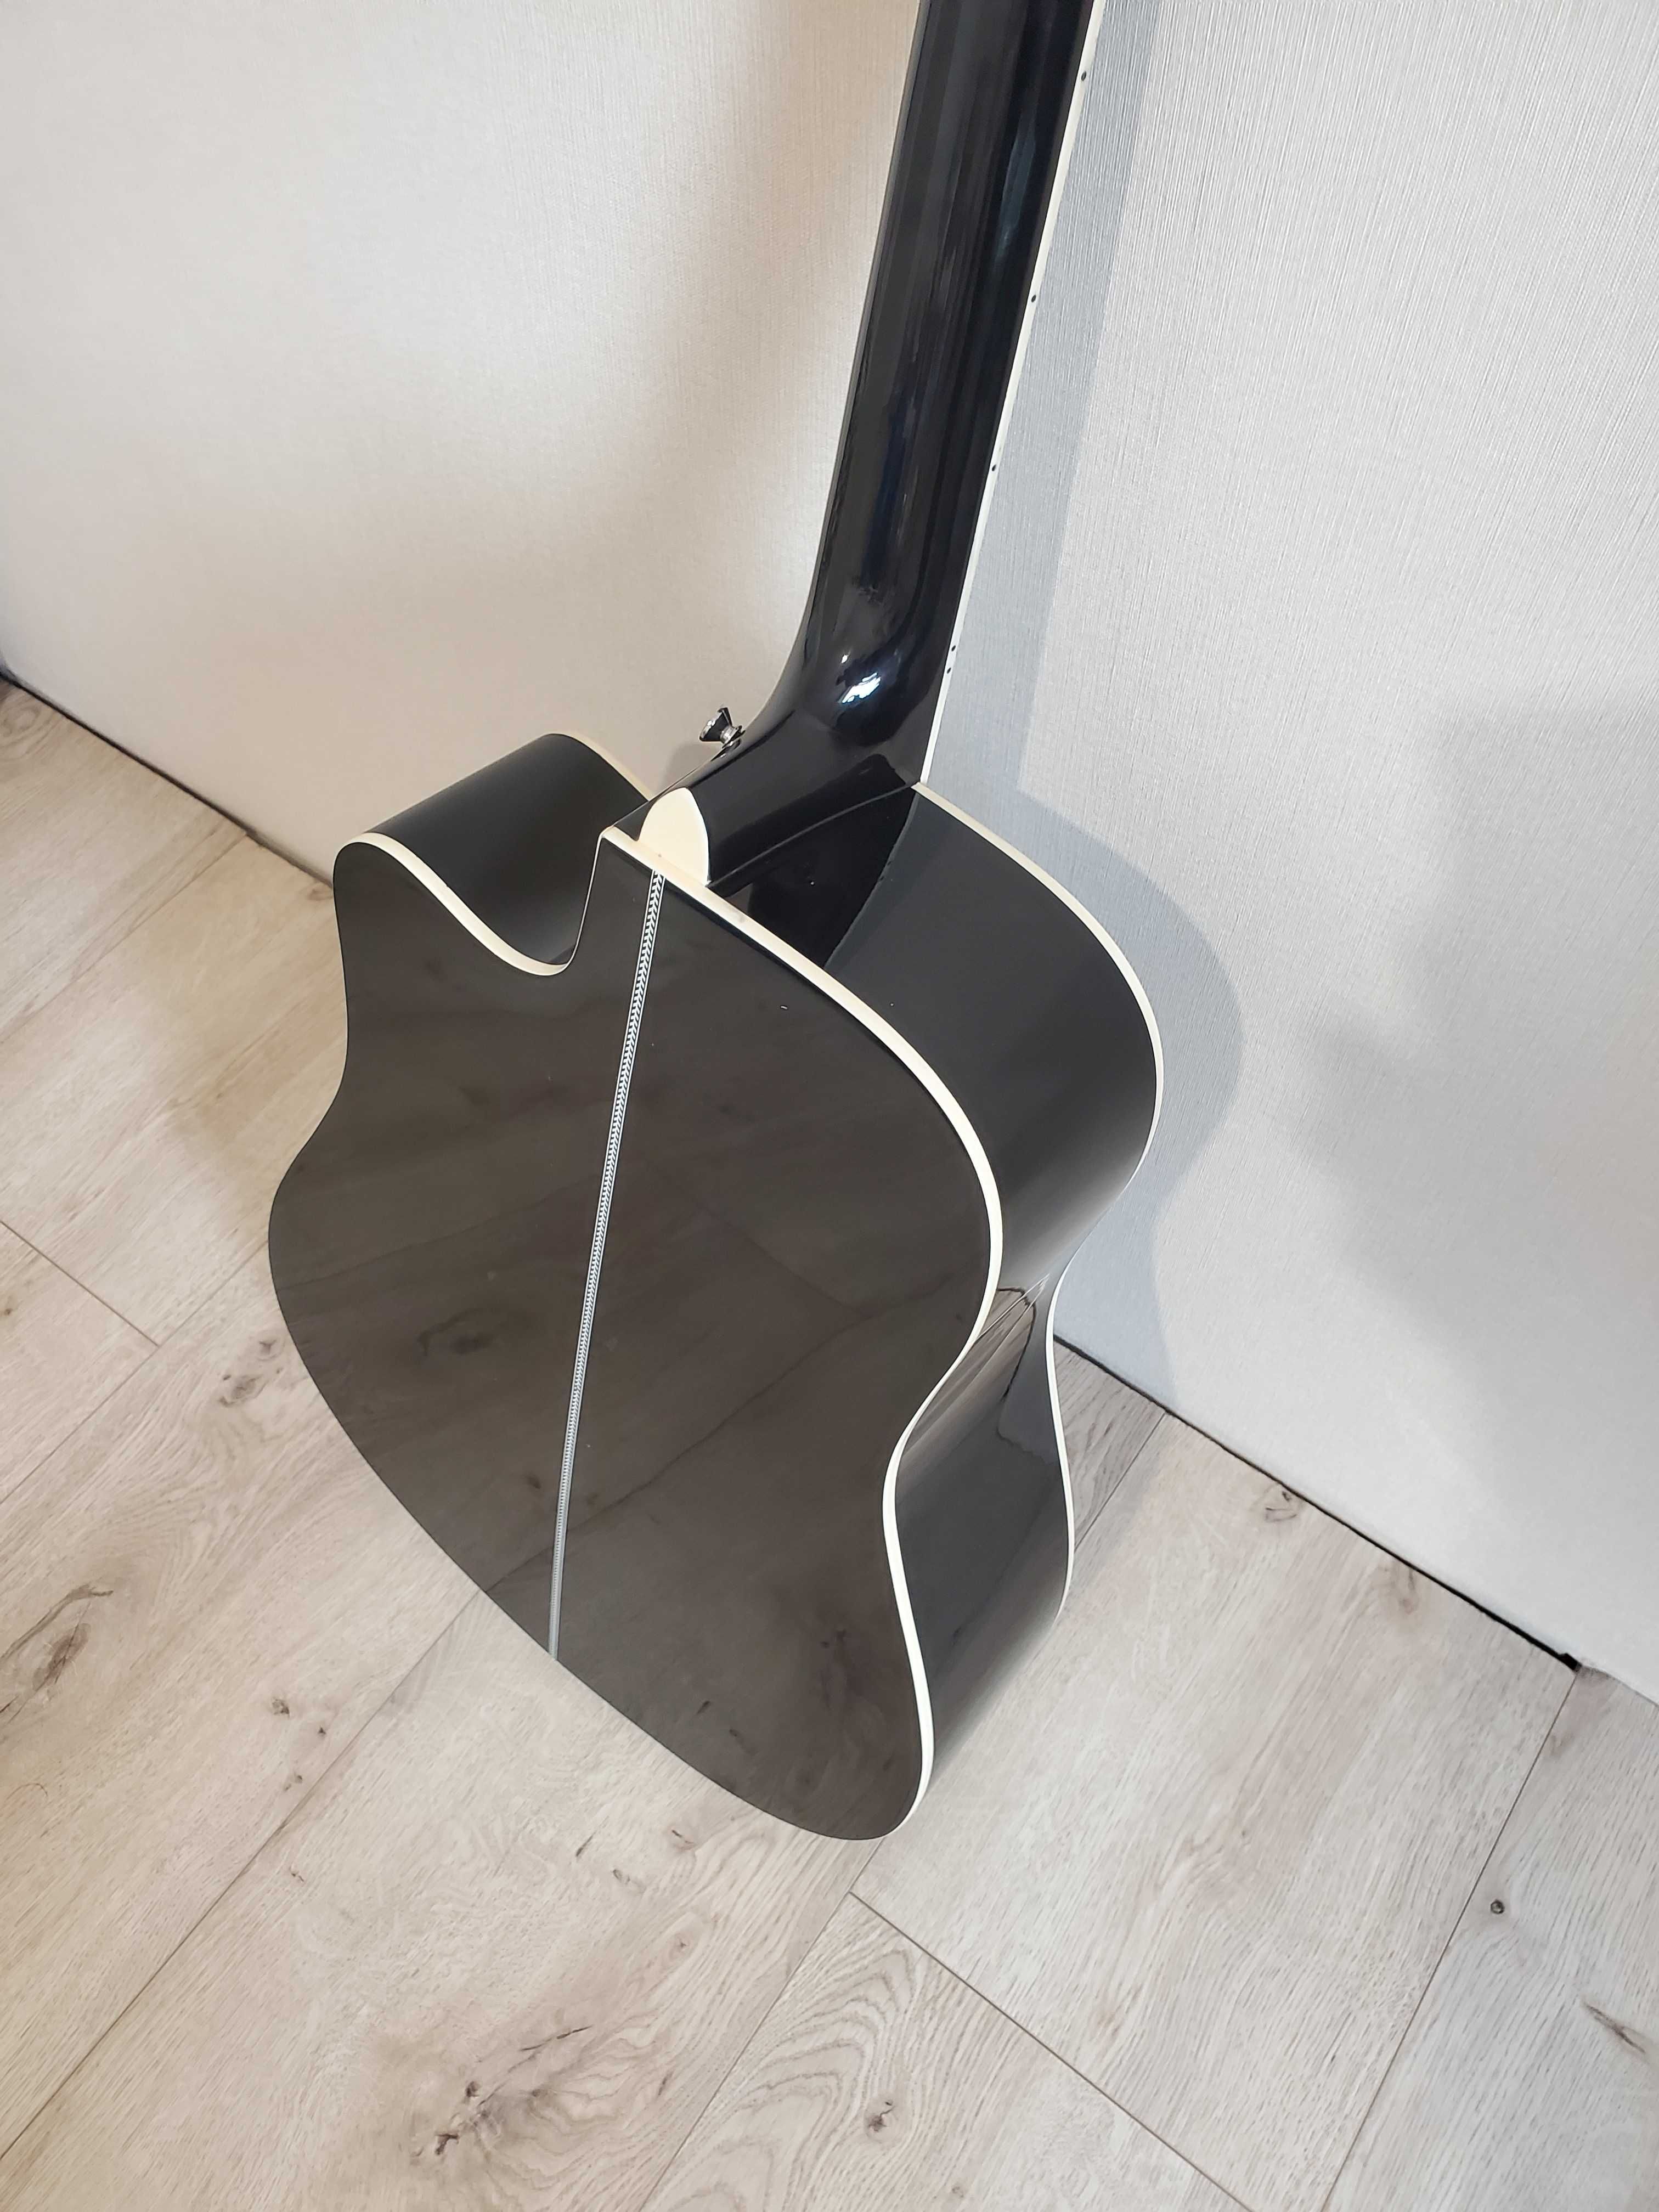 черная 4/4 акустическая гитара глянцевая корпус с липы усиленный гриф